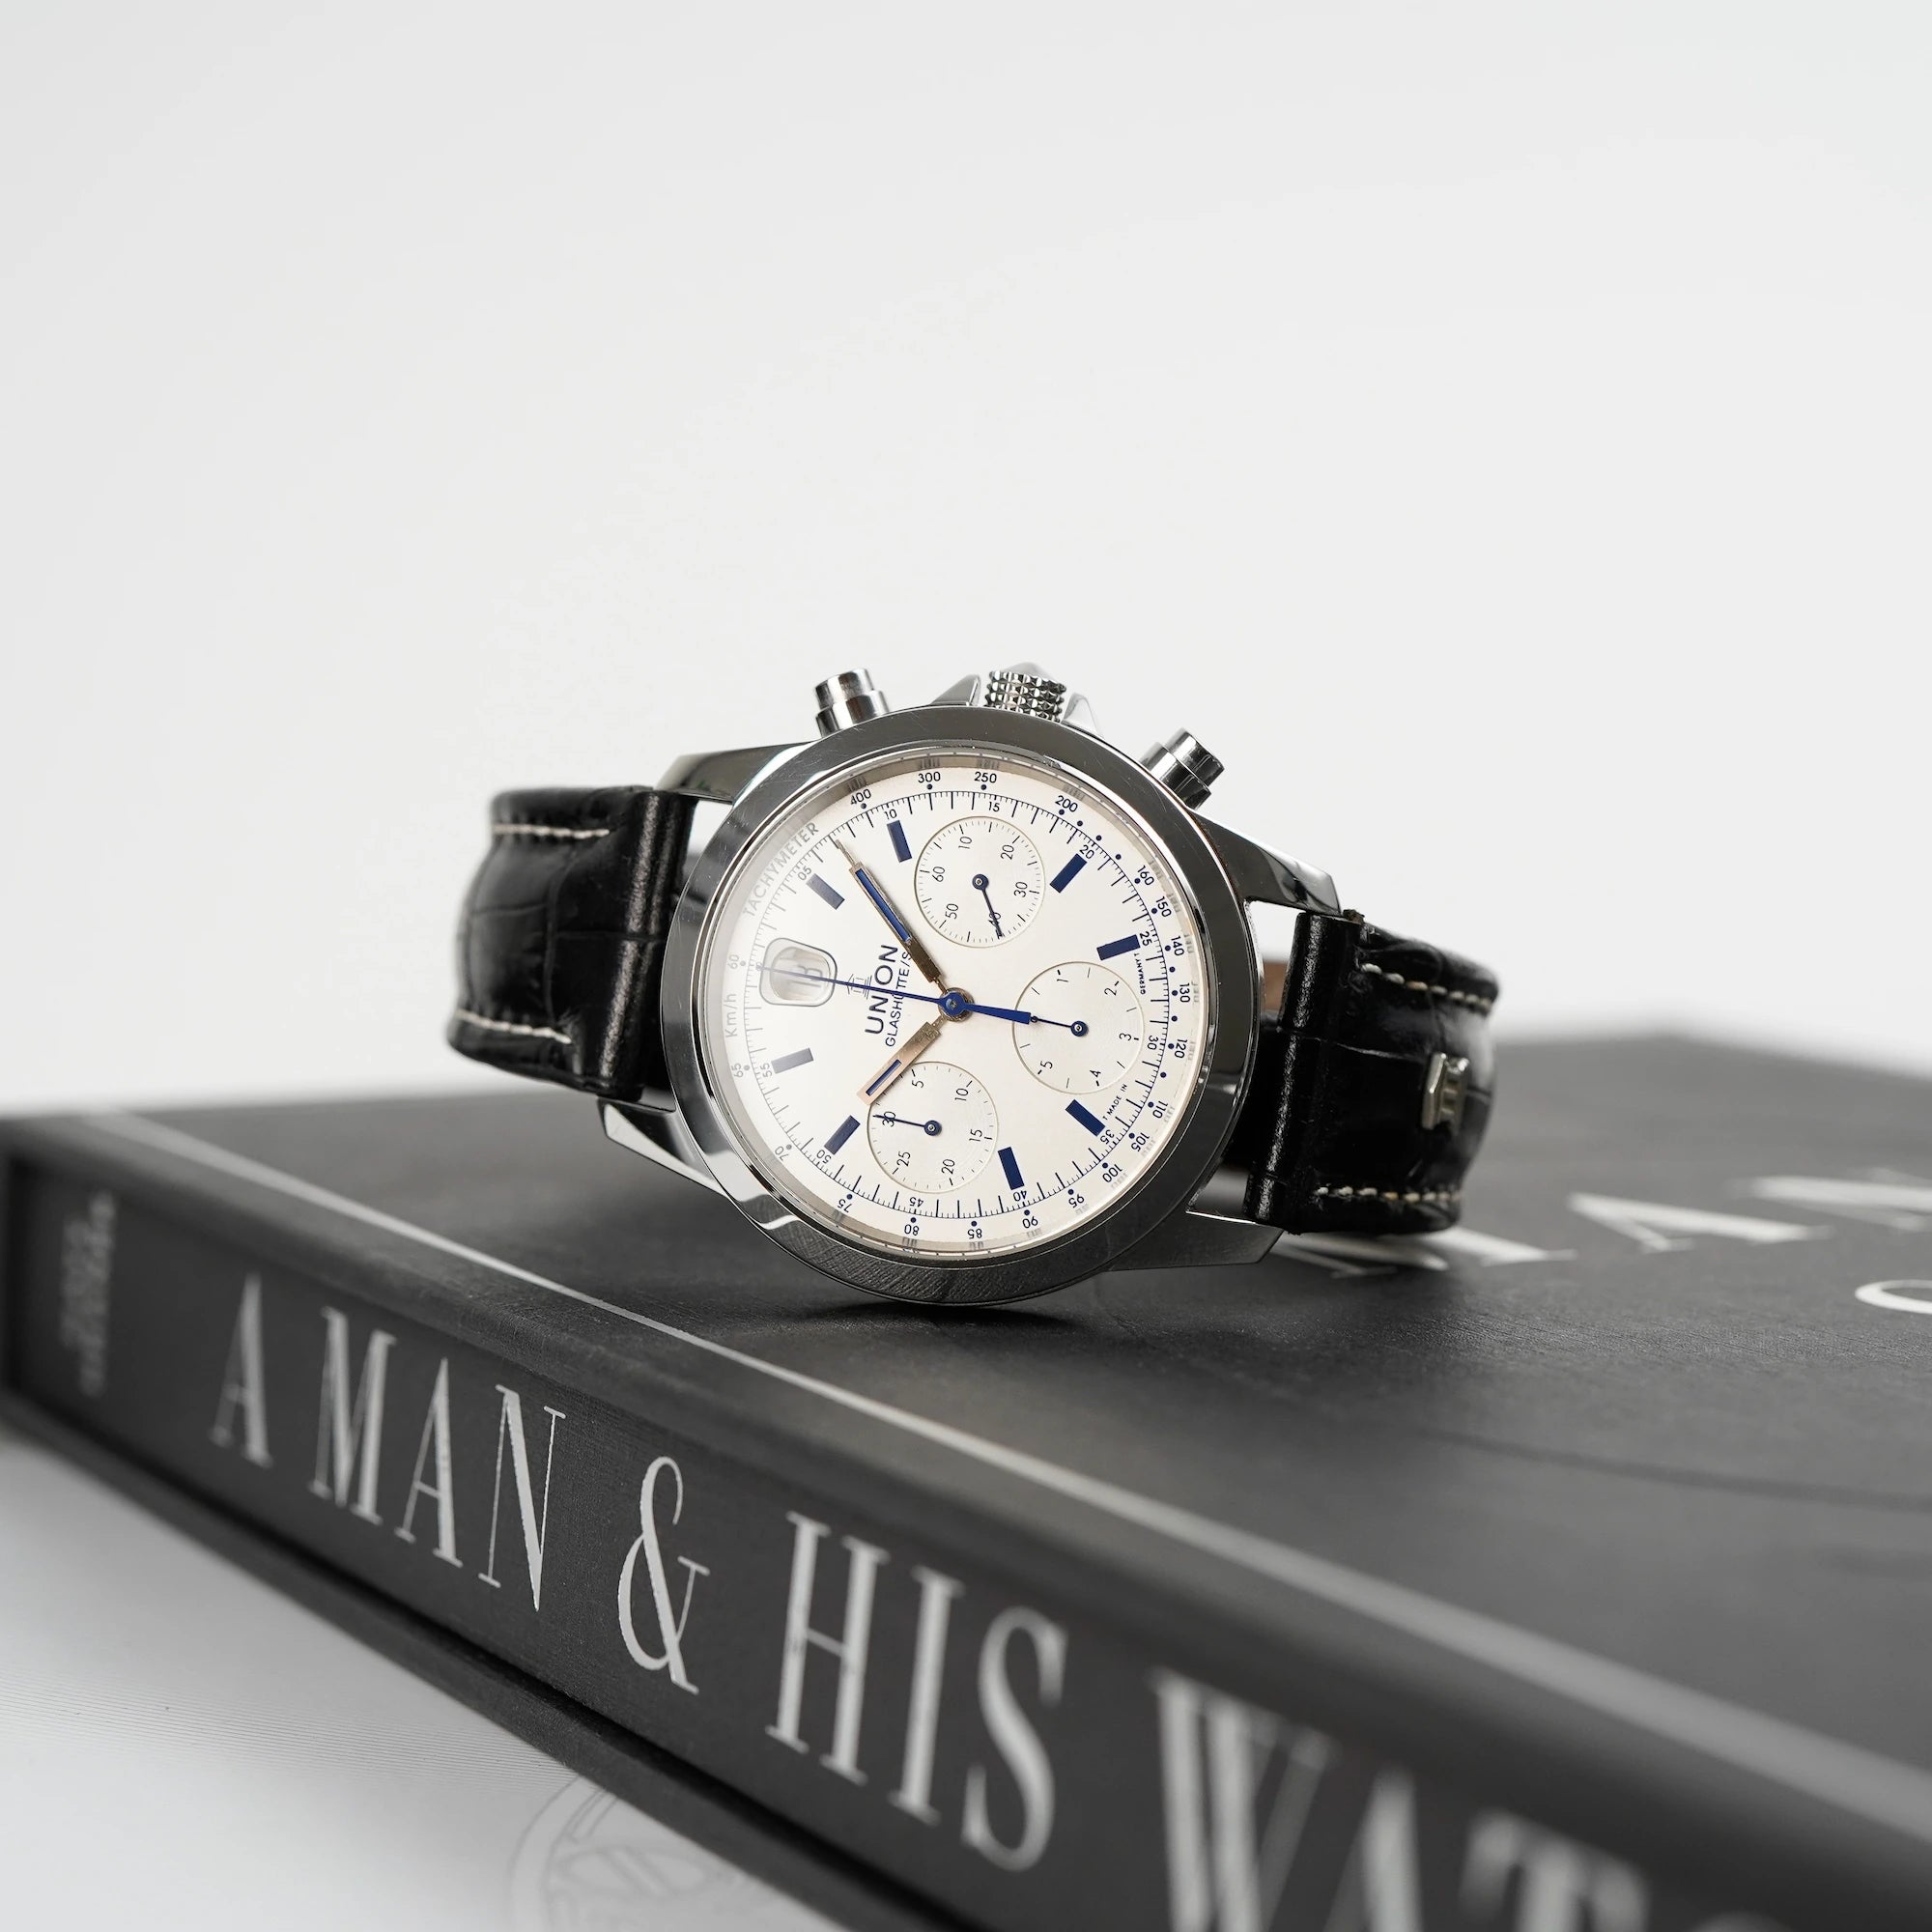 Tradition Chronograph von Union Glashütte mit weißem Zifferblatt liegt auf dem bekannten Uhrenbuch  "A Man & His Watch"